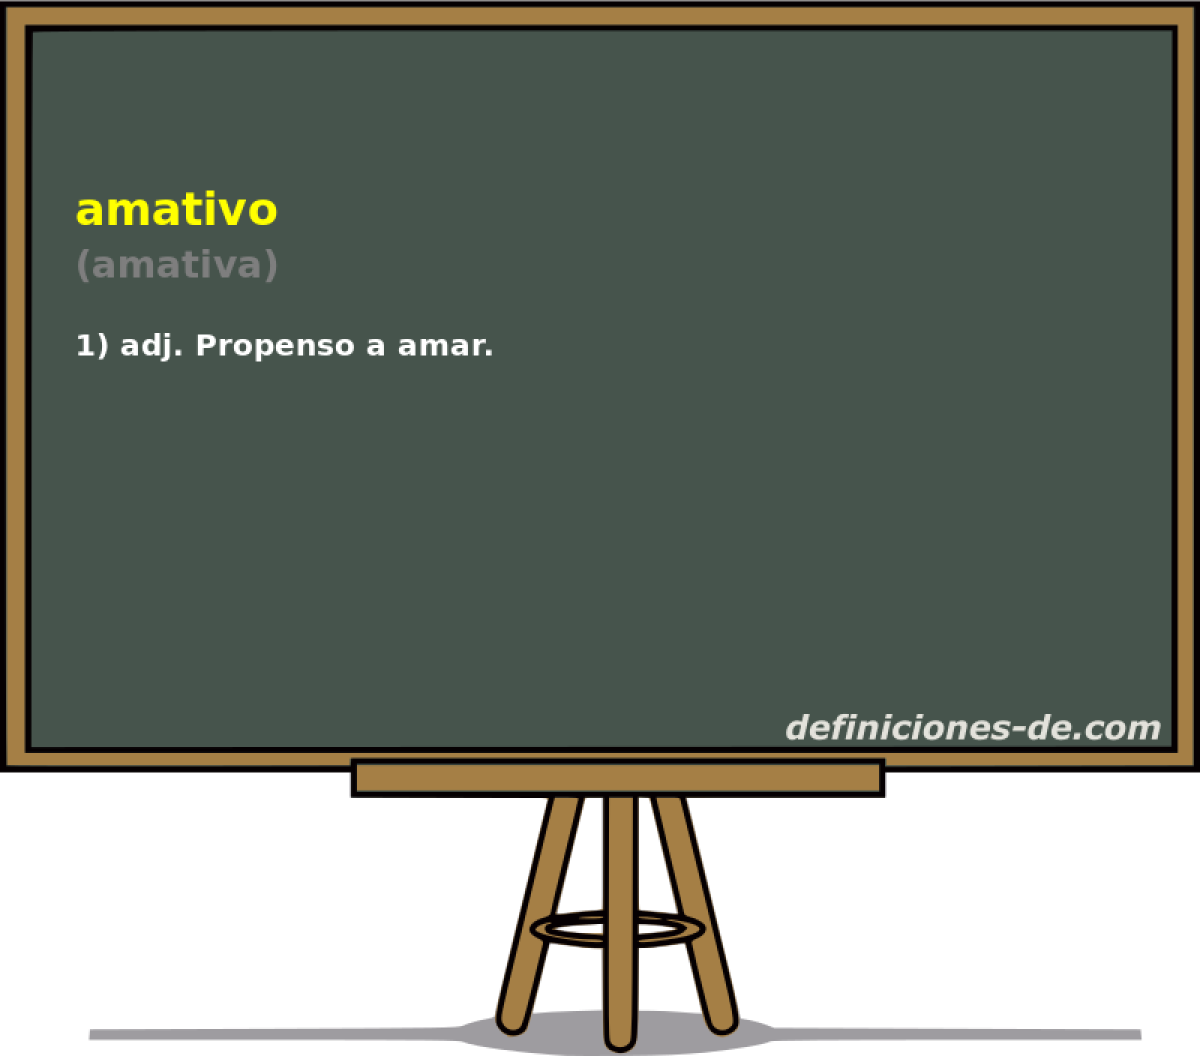 amativo (amativa)